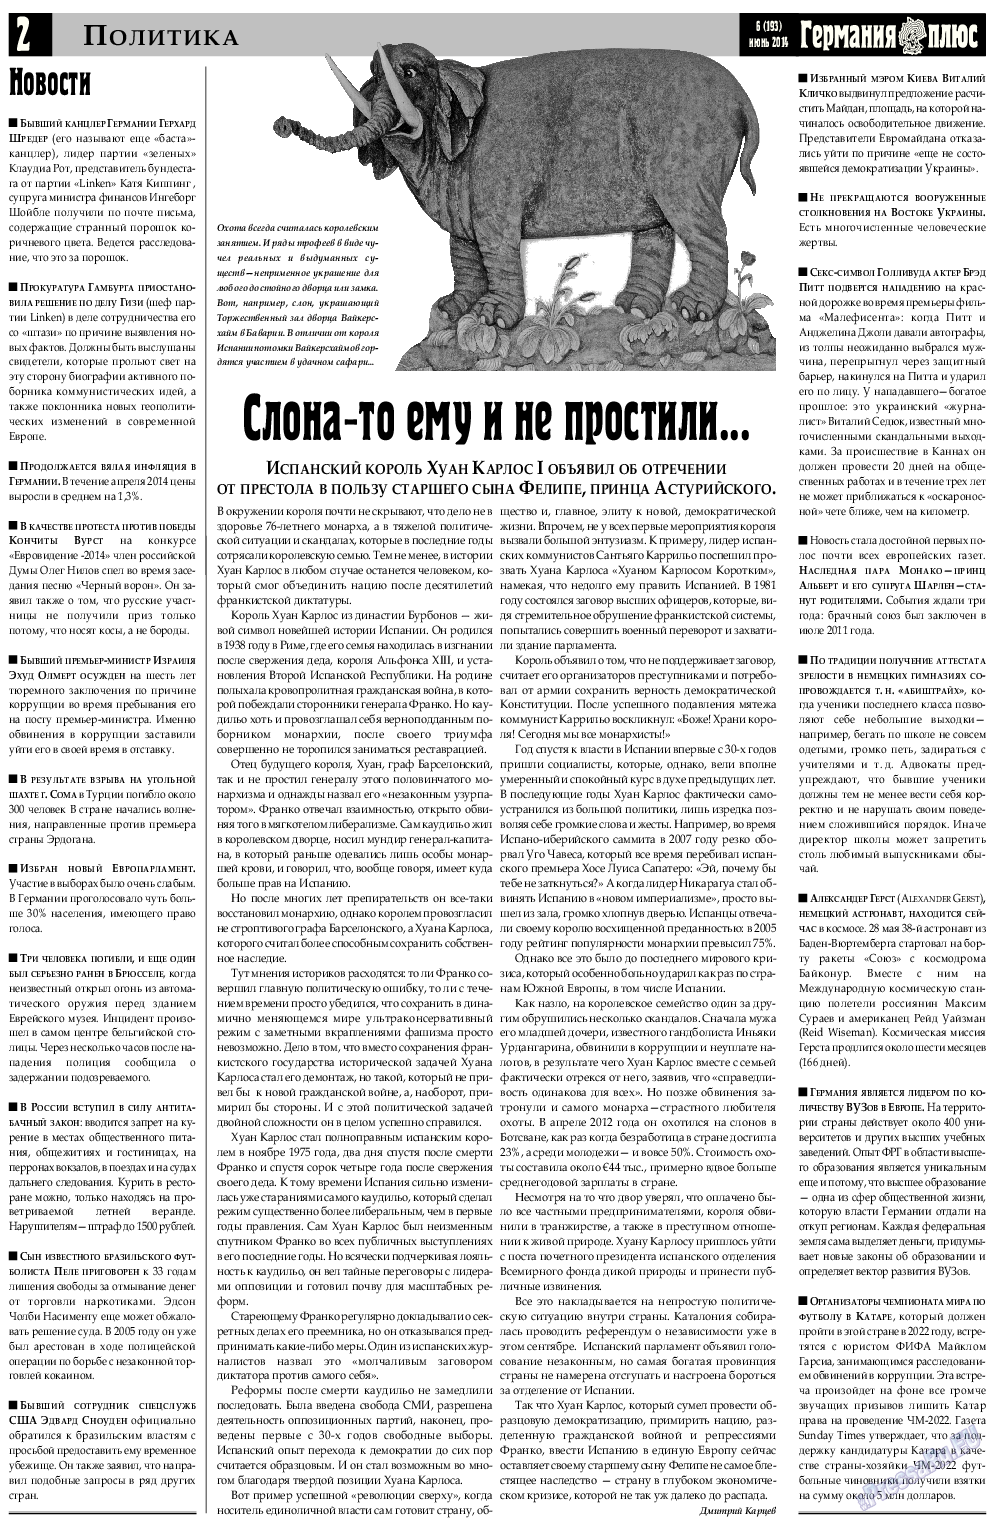 Германия плюс, газета. 2014 №6 стр.2